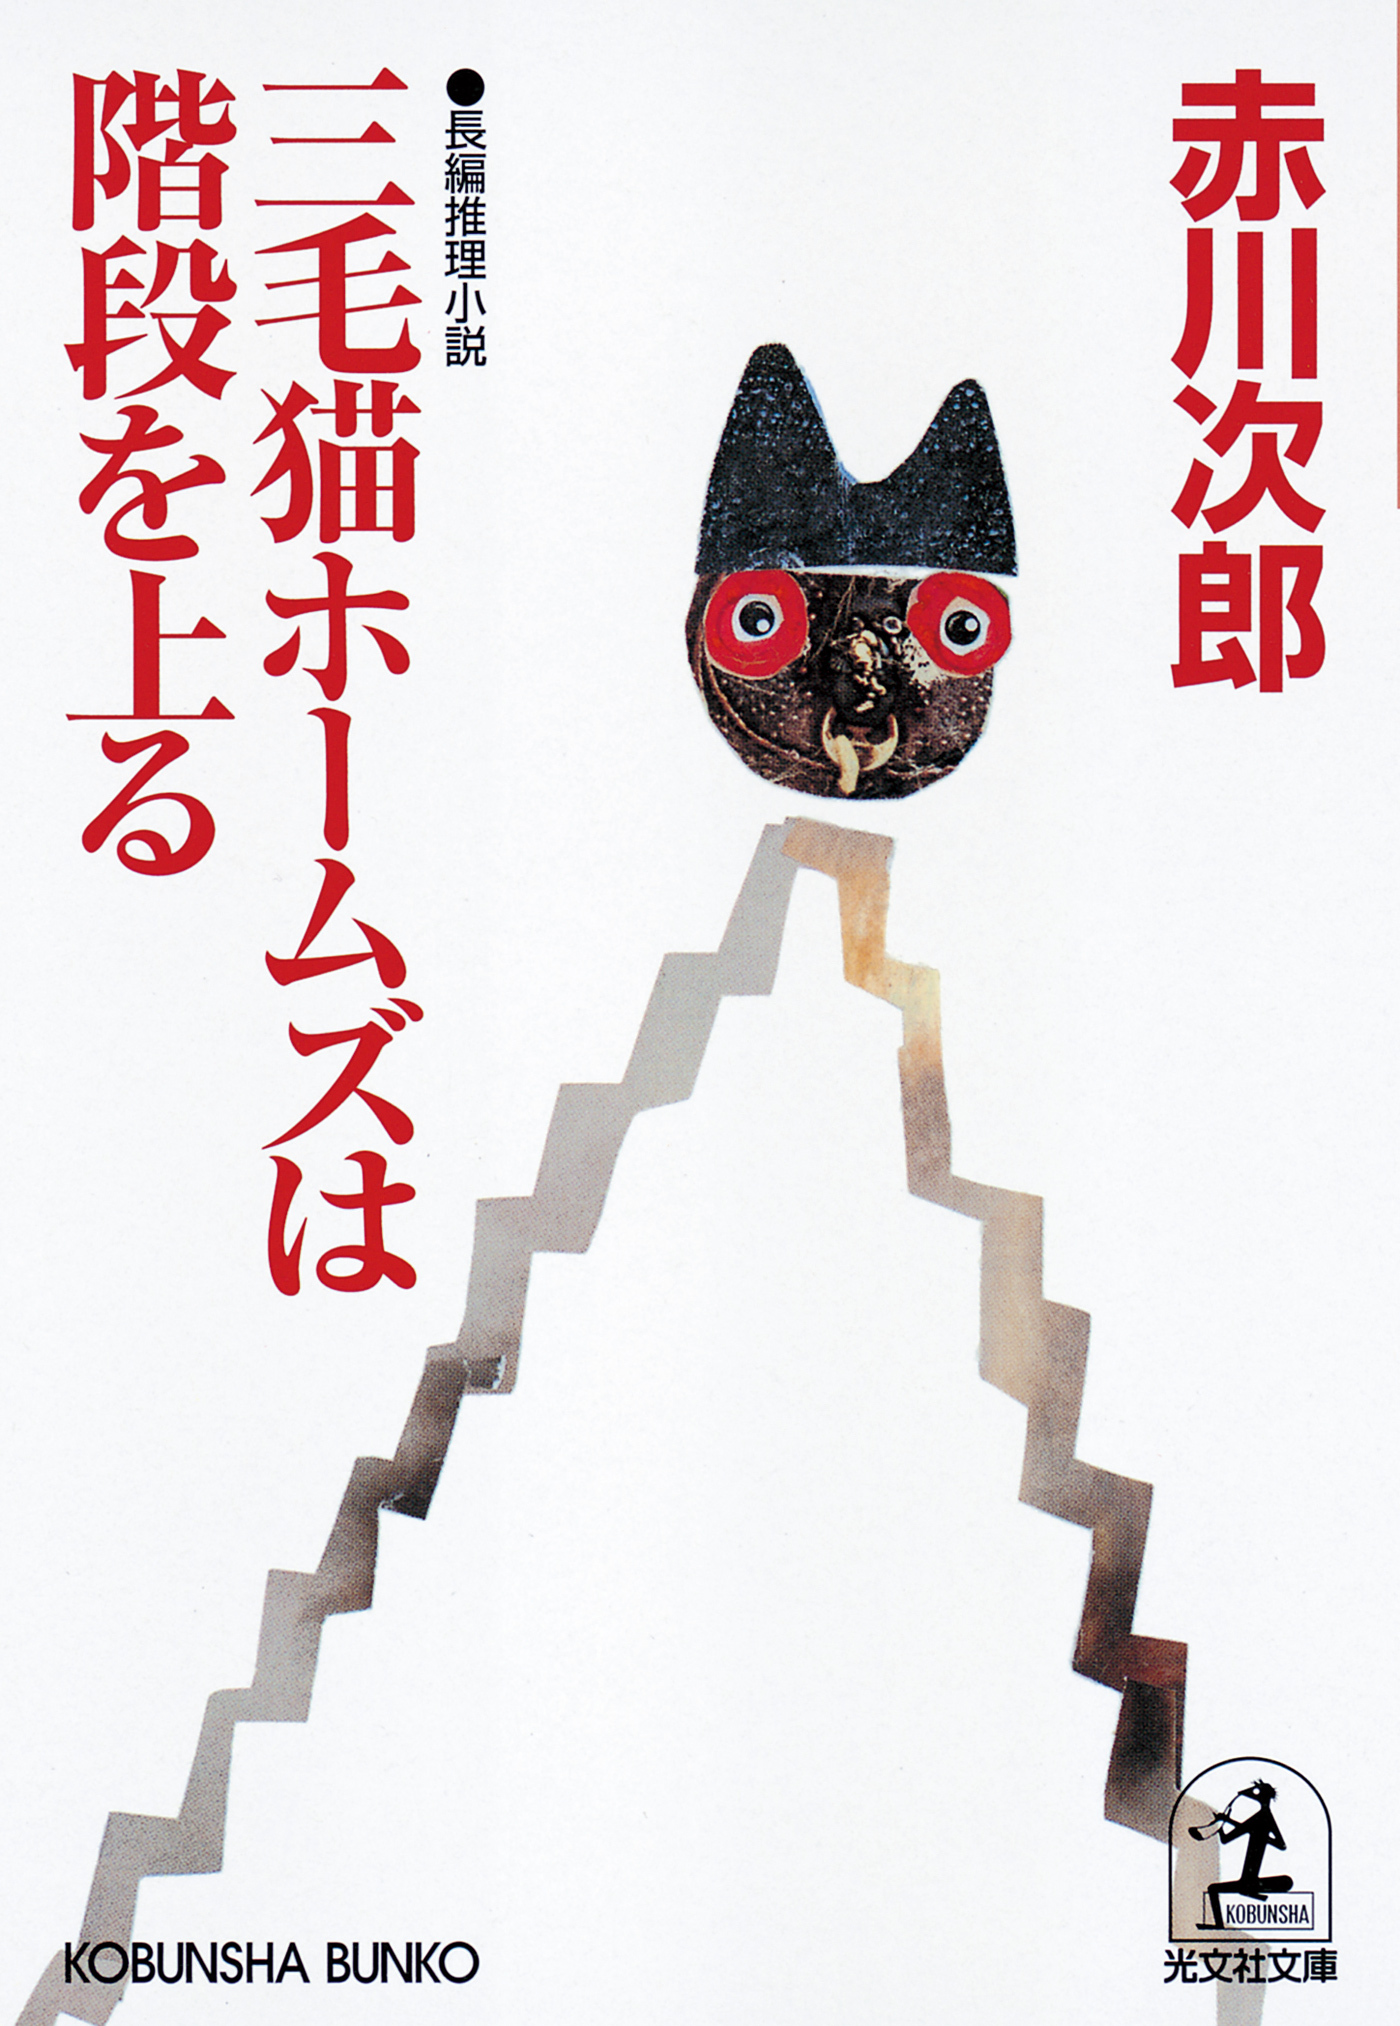 三毛猫ホームズは階段を上る1巻(最新刊)|赤川次郎|人気漫画を無料で